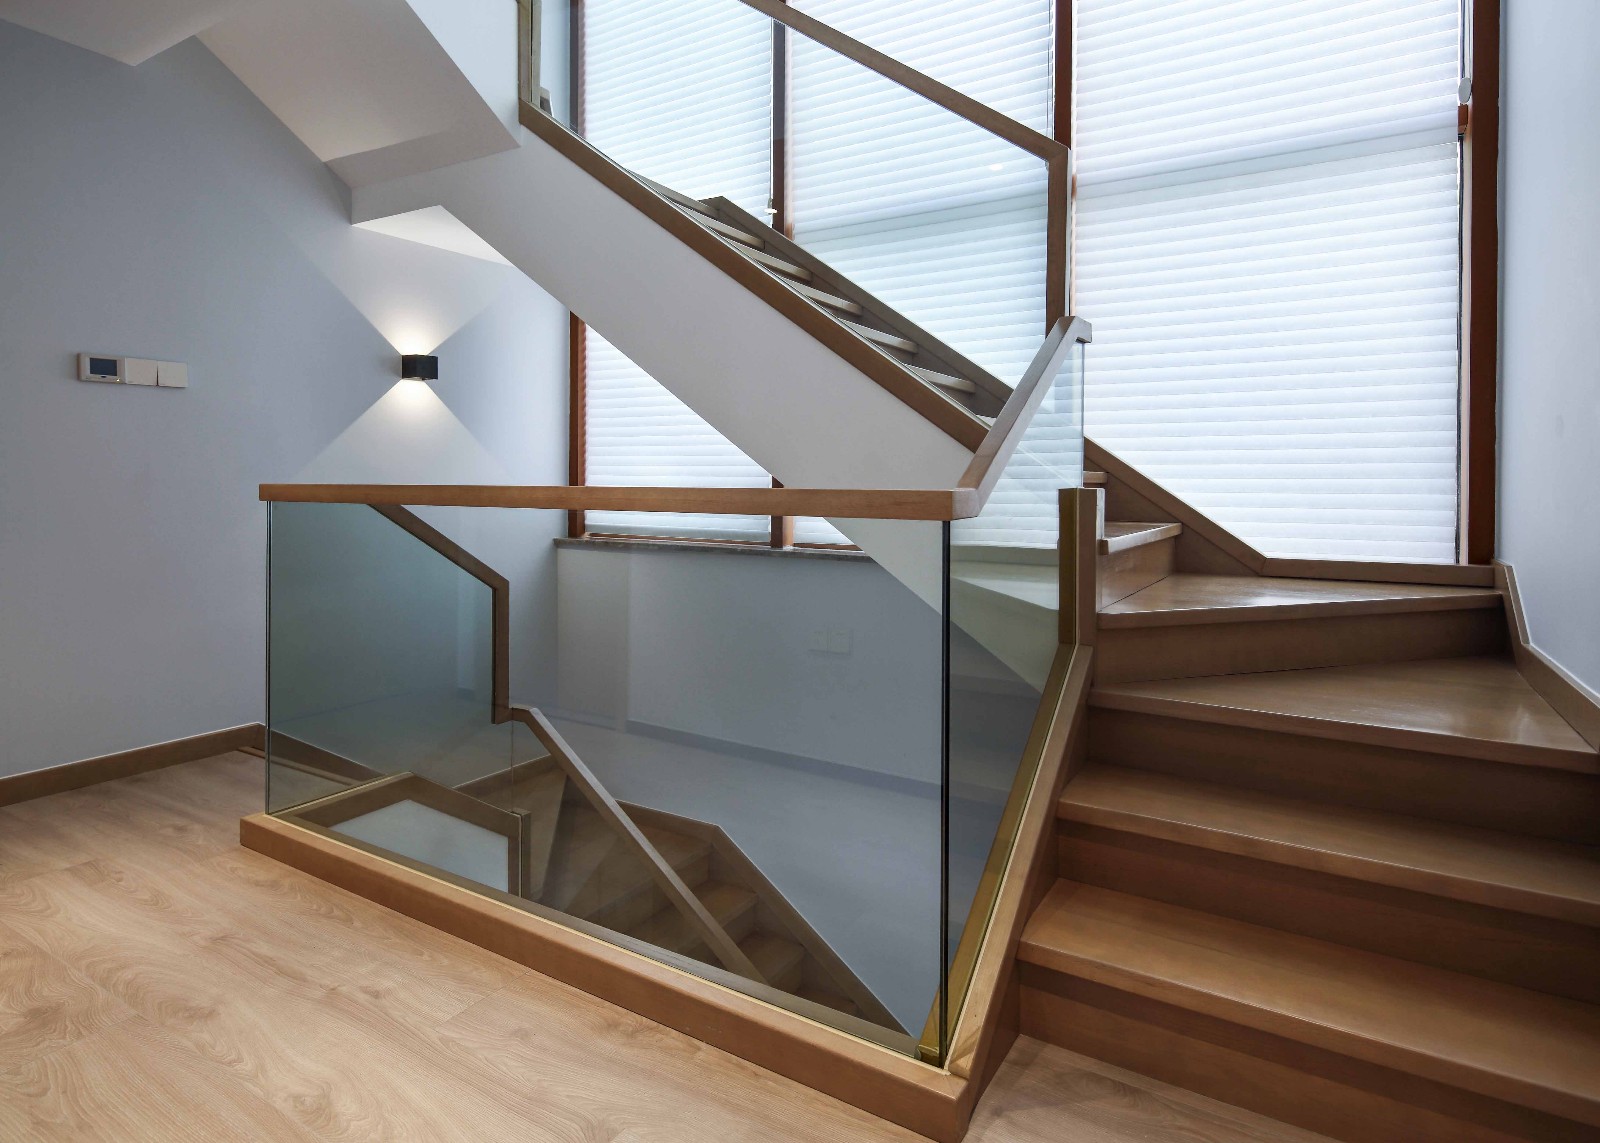 100平方房子楼梯与设计图片